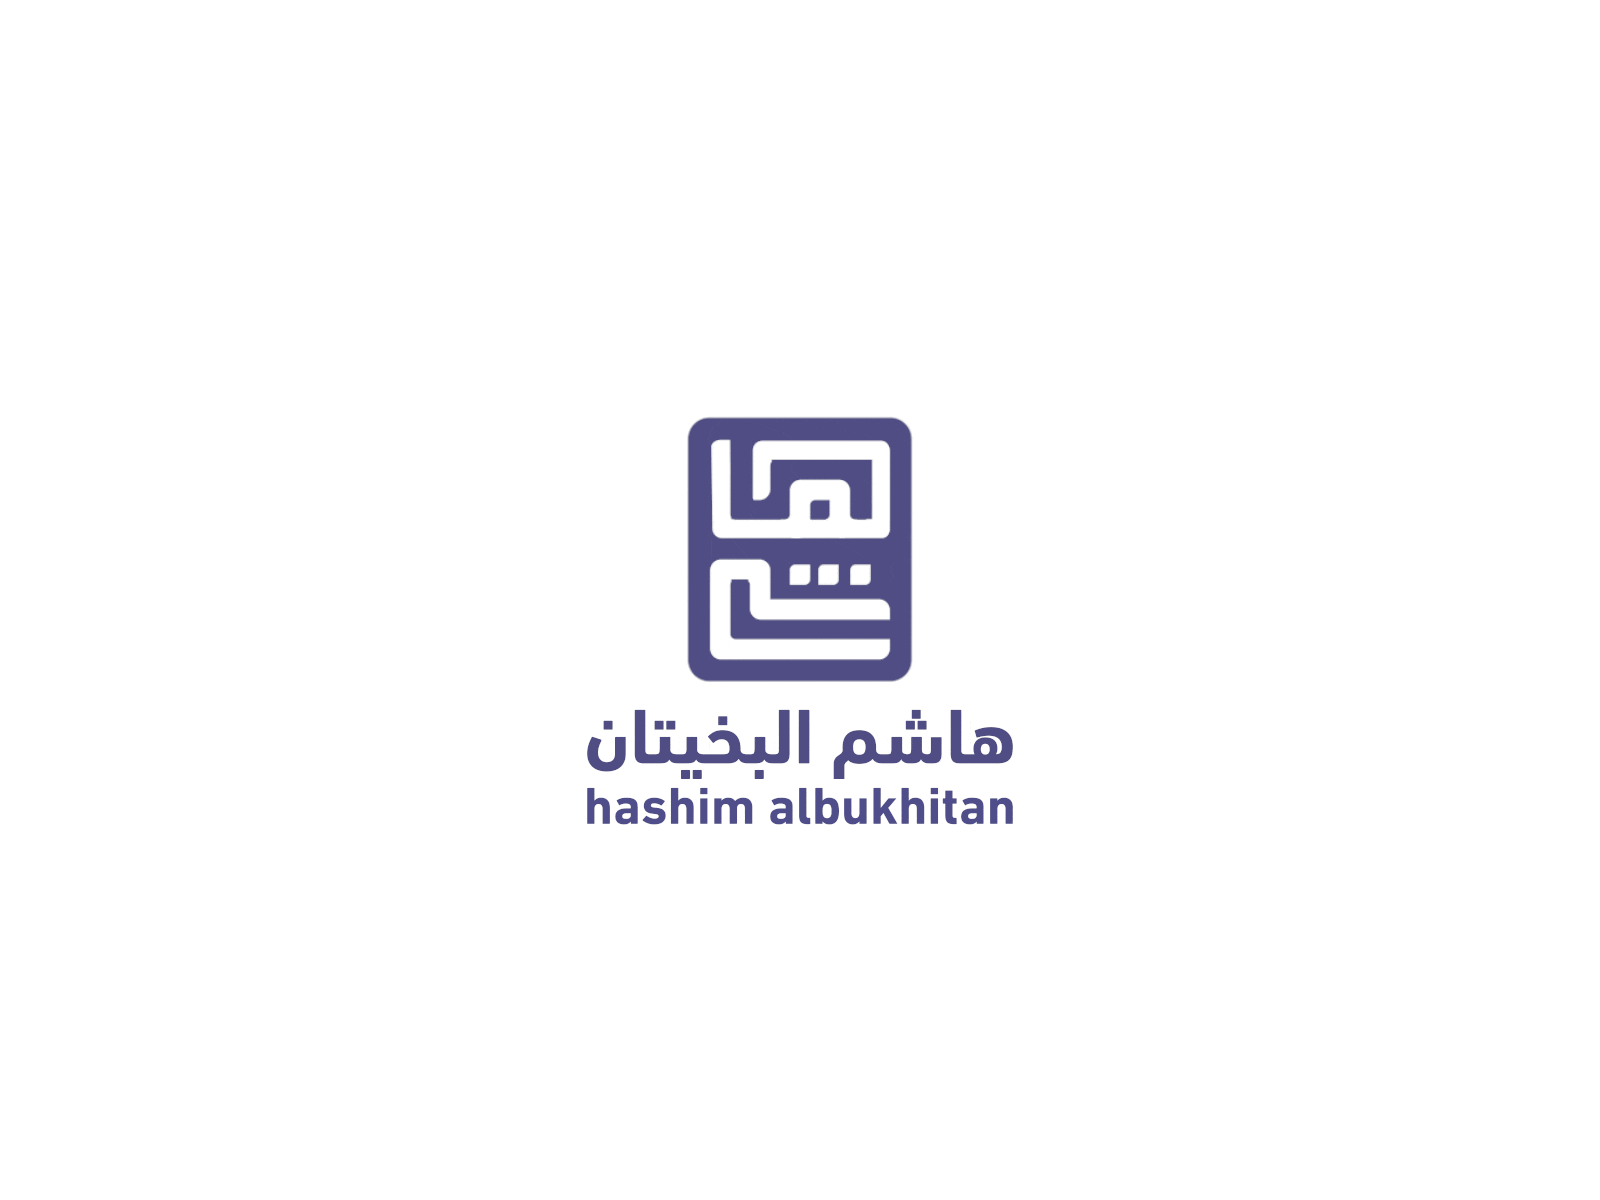 Hashim's Logo Animation